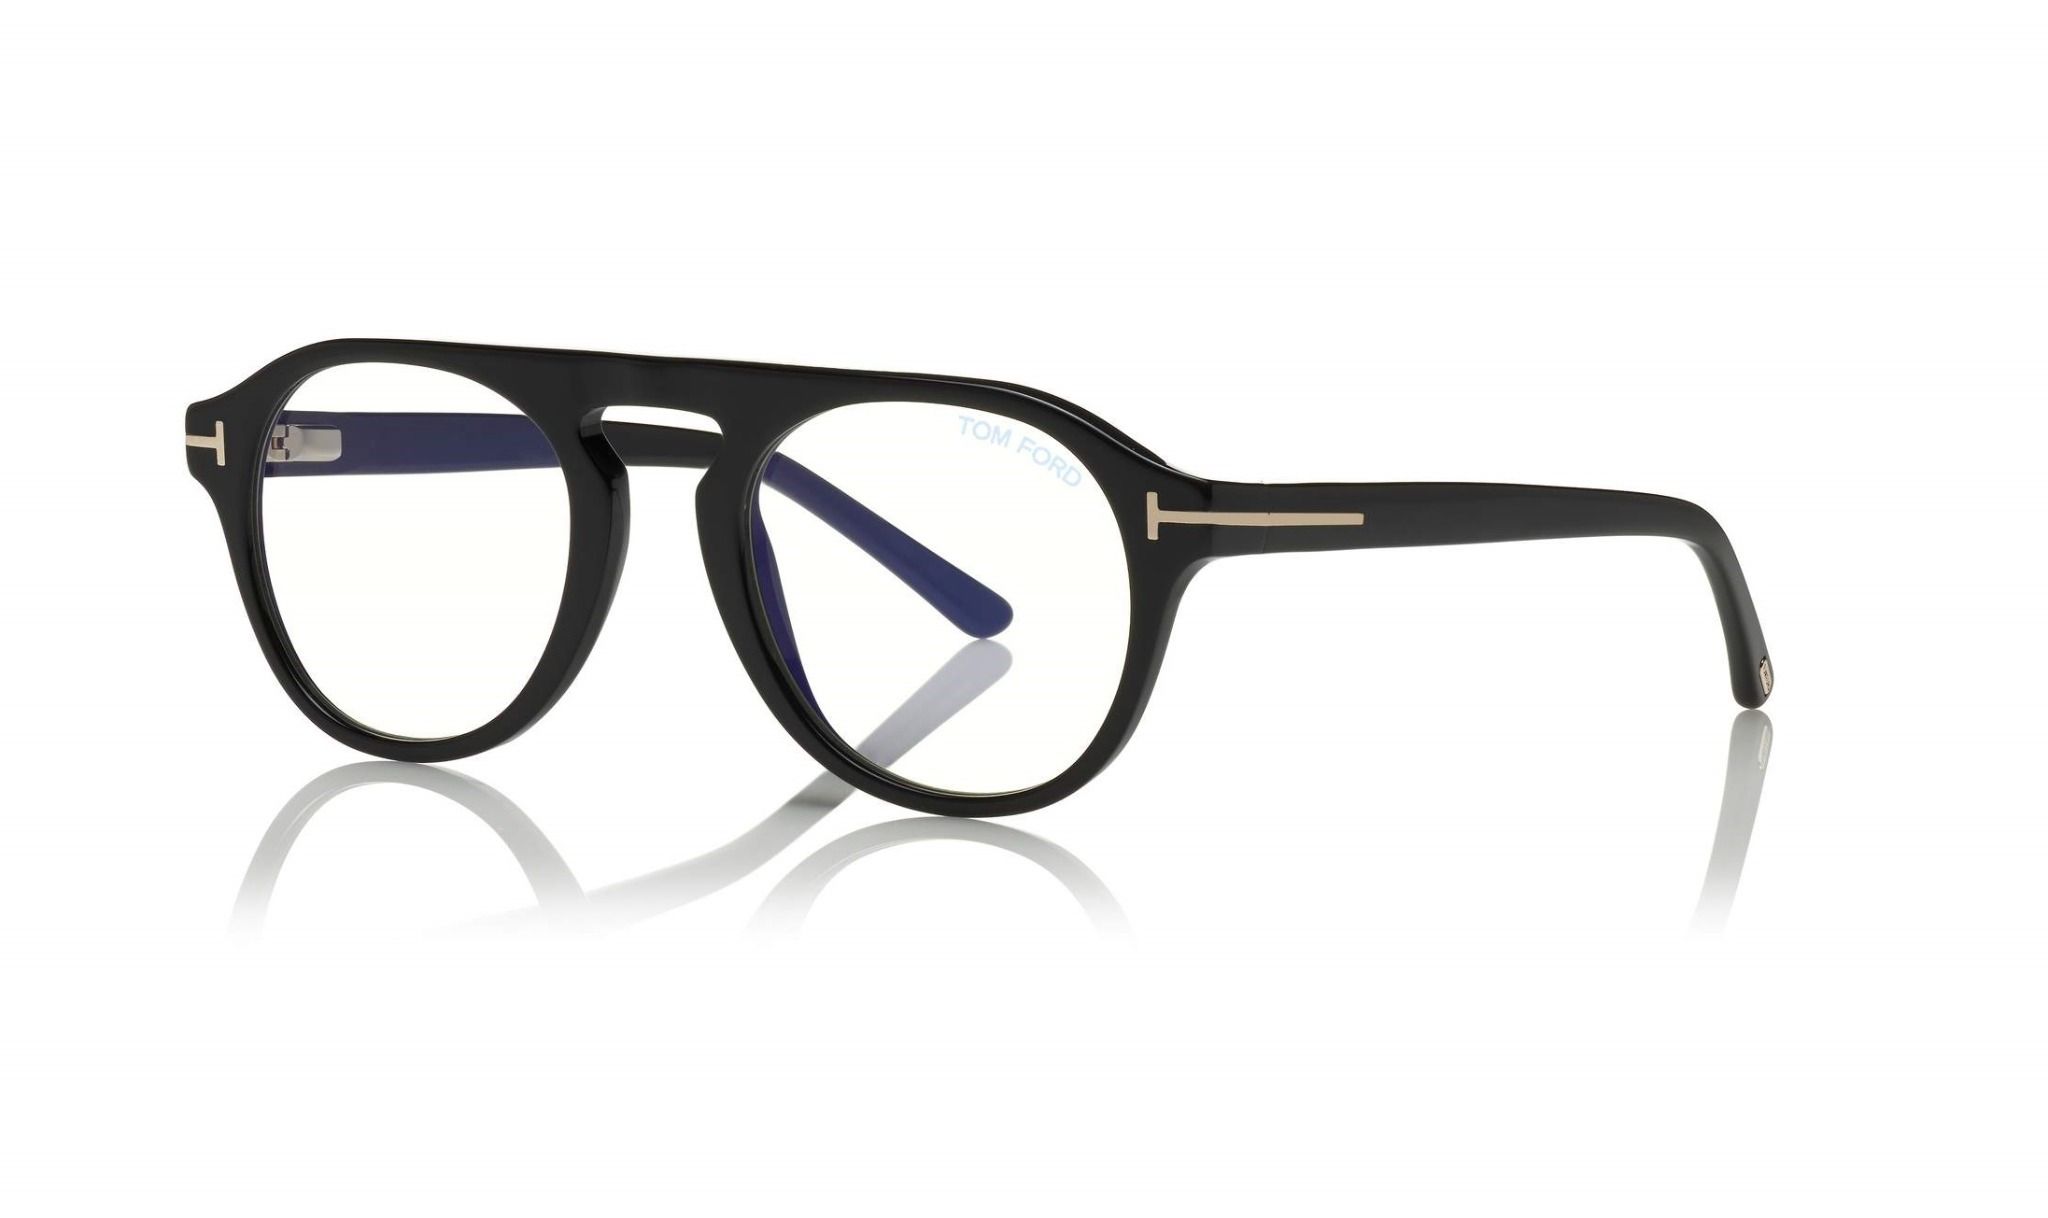  Tom Ford FT5533-B 01V blue light blocking eyeglasses with sun-clip on 